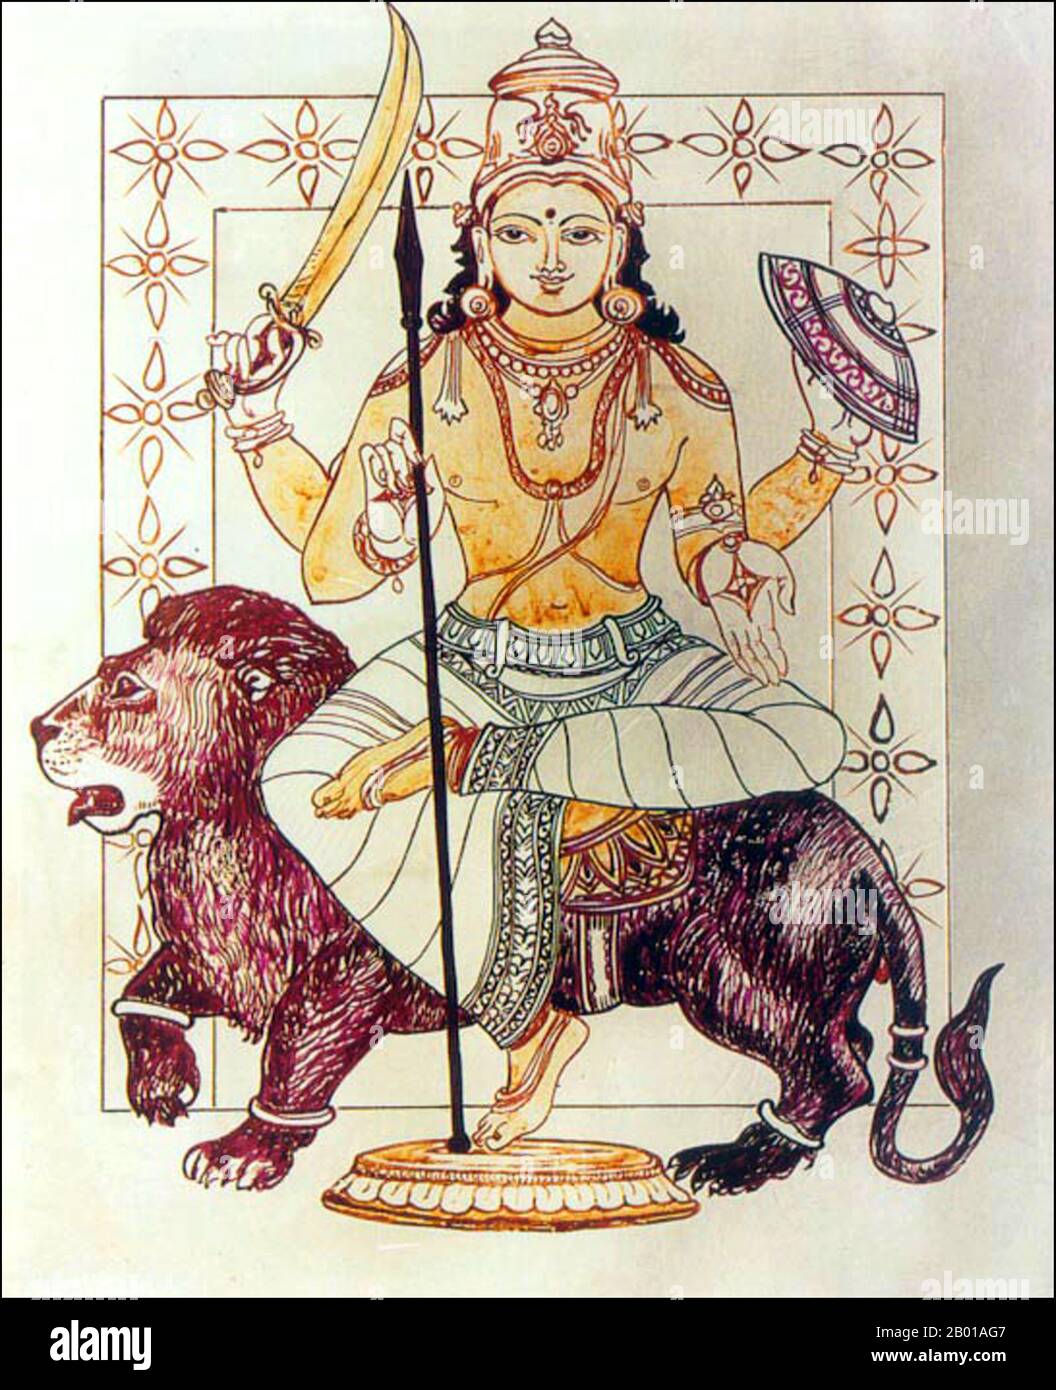 Indien: Eine indische Darstellung von Rahu, Schlangendämon und Verursacher von Sonnen- und Mondfinsternissen. In der hinduistischen Mythologie ist Rahu eine Schlange, die die Sonne oder den Mond verschlingt und Finsternisse verursacht. Er wird in der Kunst als ein Drache dargestellt, der ohne Körper auf einem von acht schwarzen Pferden gezogenen Wagen reitet. Rahu ist einer der Navagrahas (neun Planeten) in der vedischen Astrologie. Die Rahu Kala (Tageszeit unter dem Einfluss von Rahu) gilt als ungünstig. Stockfoto